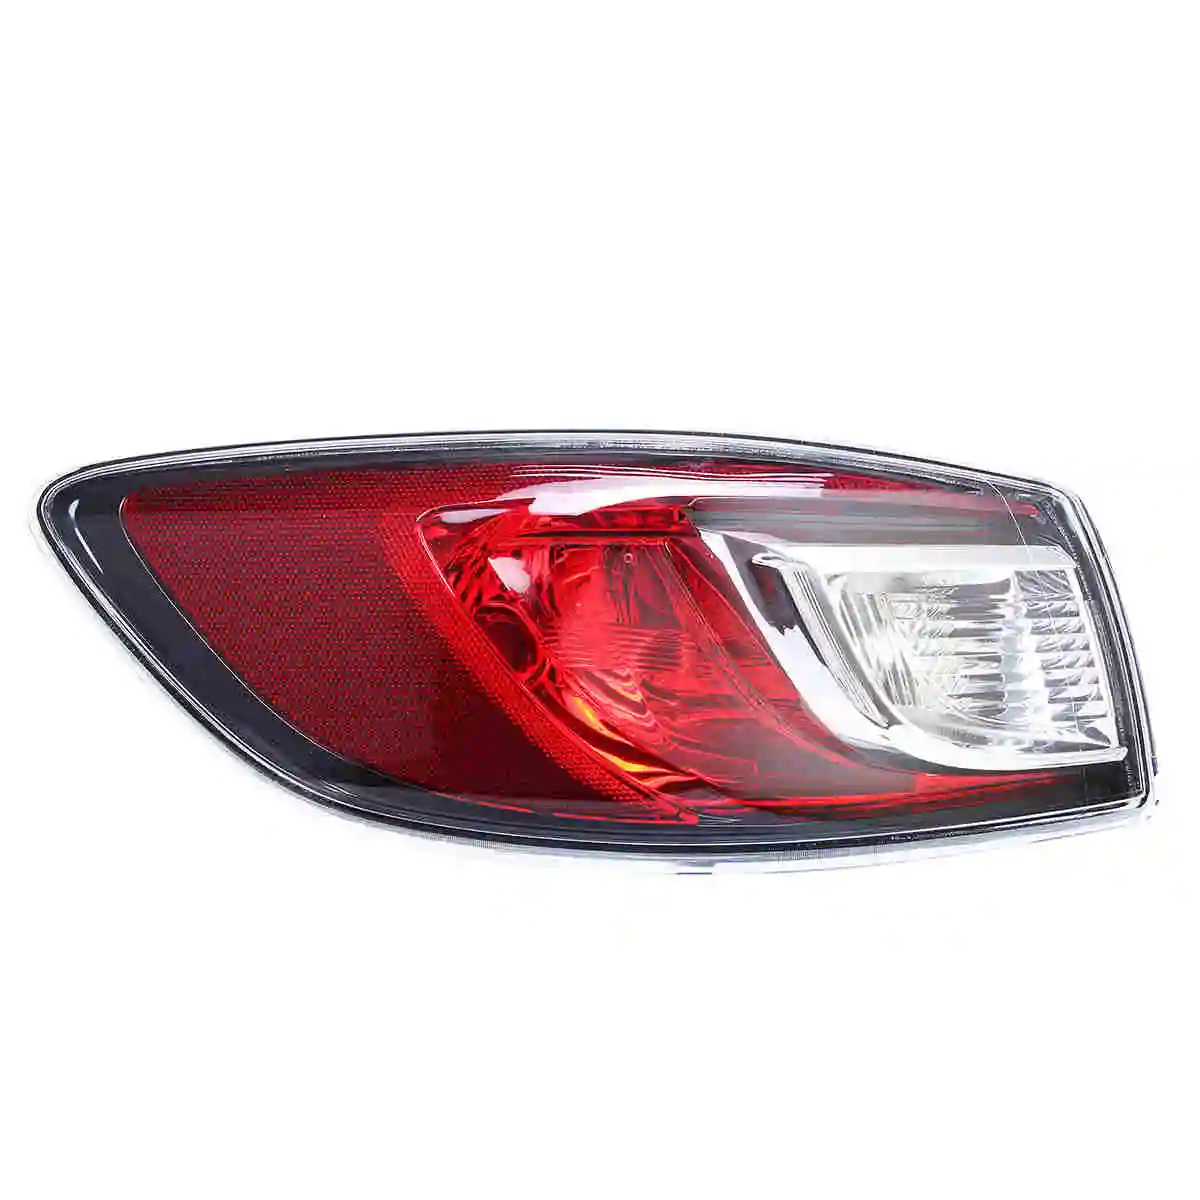 Красный задний светильник тормозной фонарь задний стоп-сигнал светильник задняя сигнальная лампа для Mazda 3 BL 2009 2010 2011 2012 2013 4 Двери Седан - Испускаемый цвет: Left